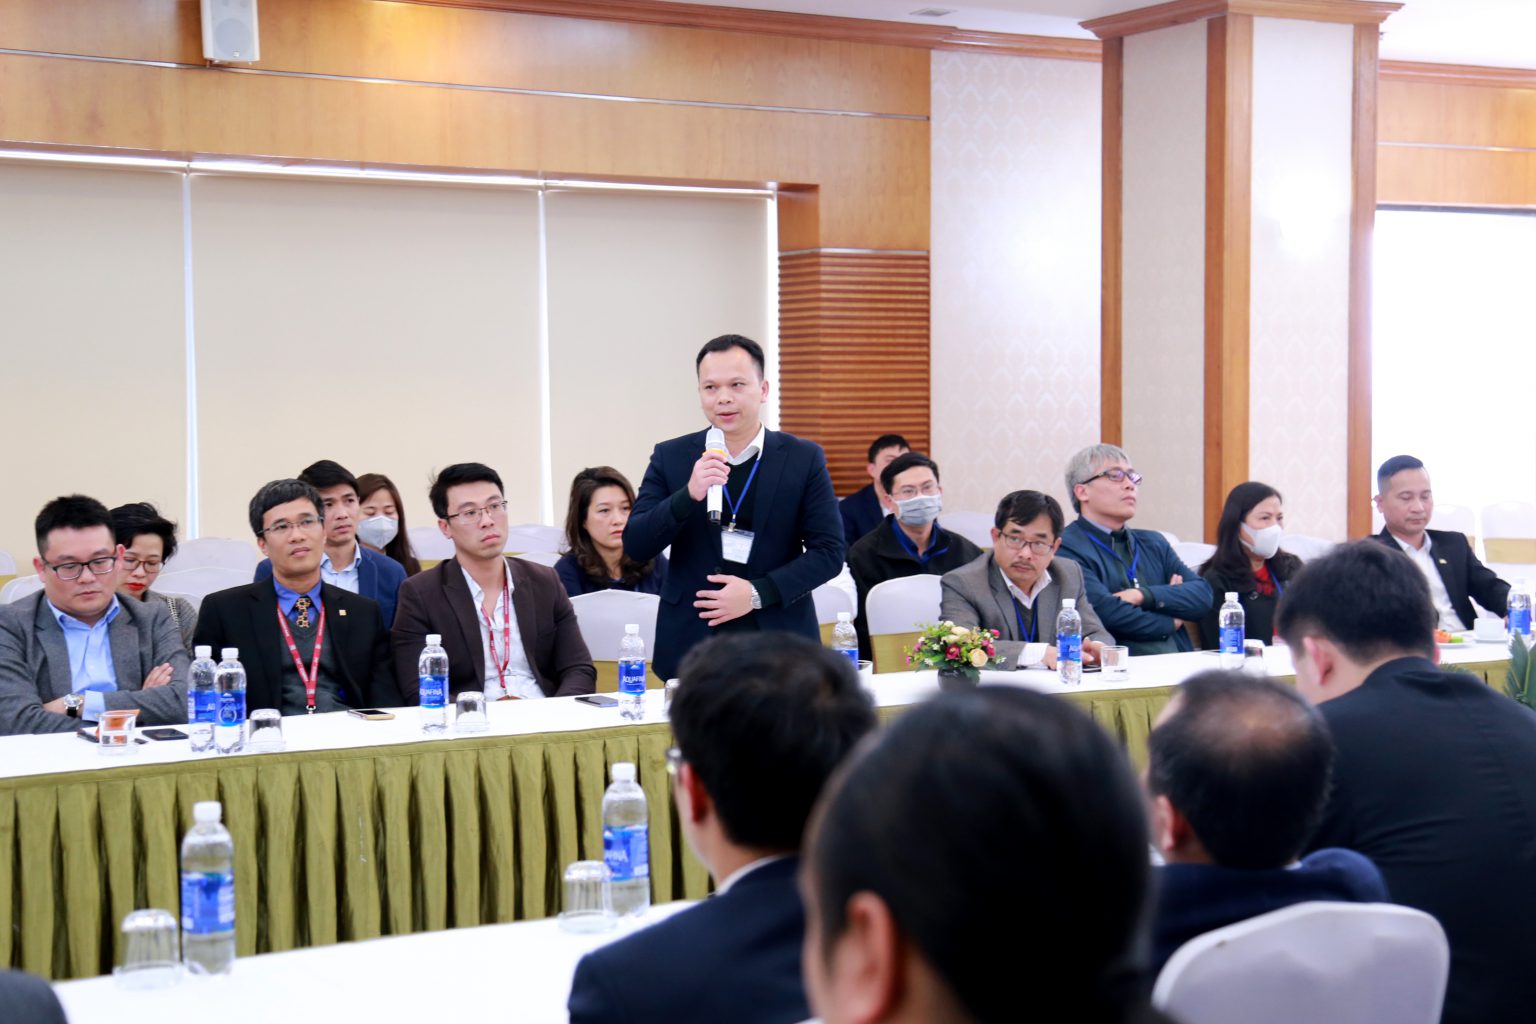 Tập đoàn Nam Cường tổ chức gặp gỡ các đối tác nhân dịp đầu xuân Canh Tý 2020